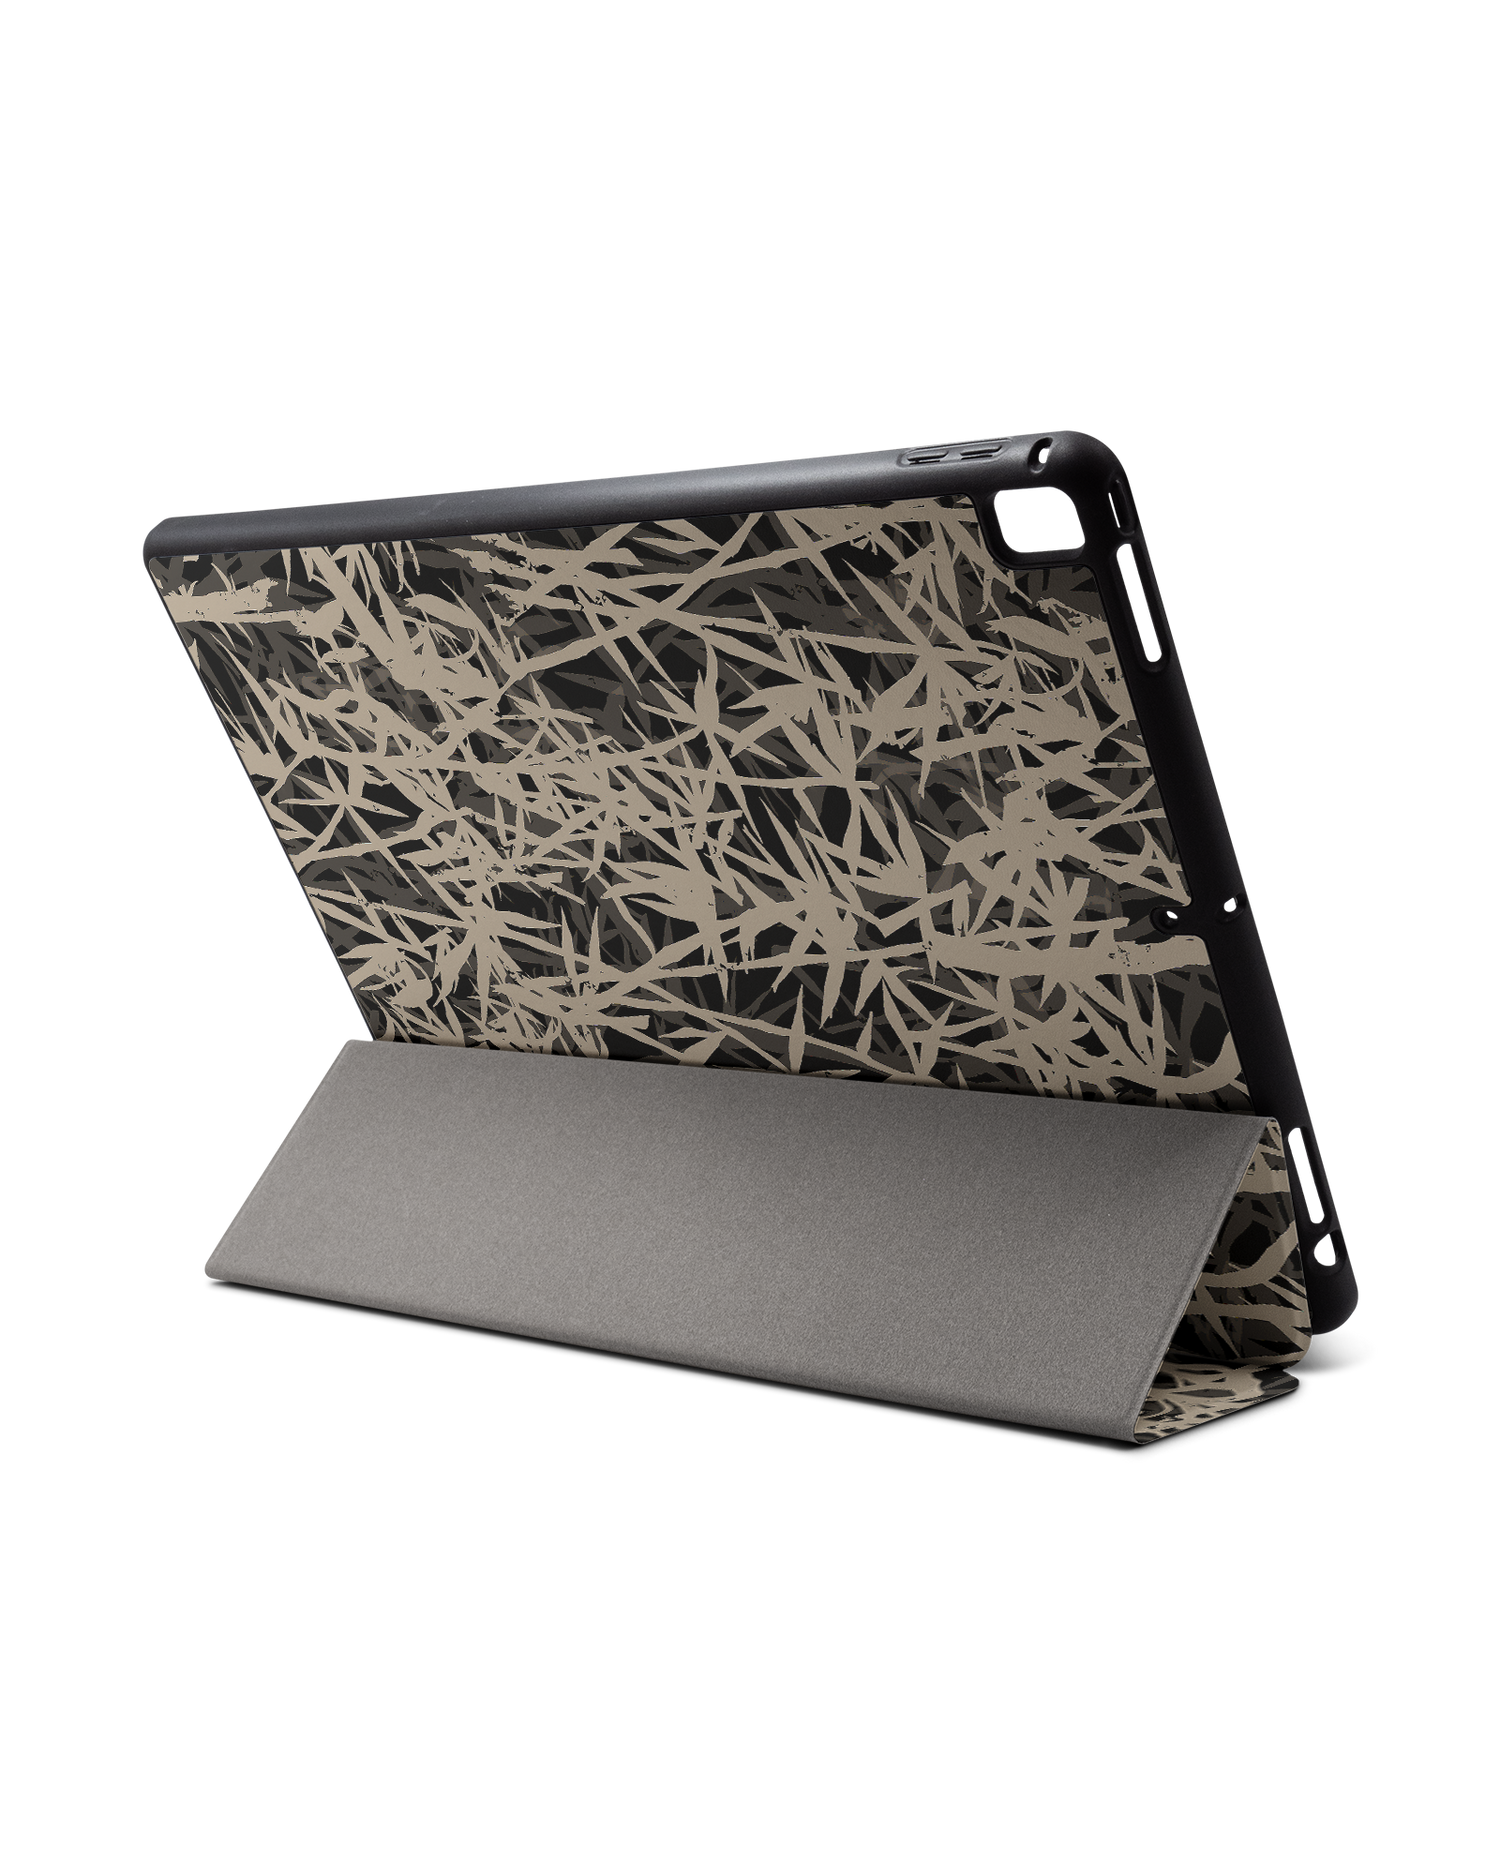 Bamboo Pattern iPad Hülle mit Stifthalter für Apple iPad Pro 2 12.9'' (2017): Aufgestellt im Querformat von hinten